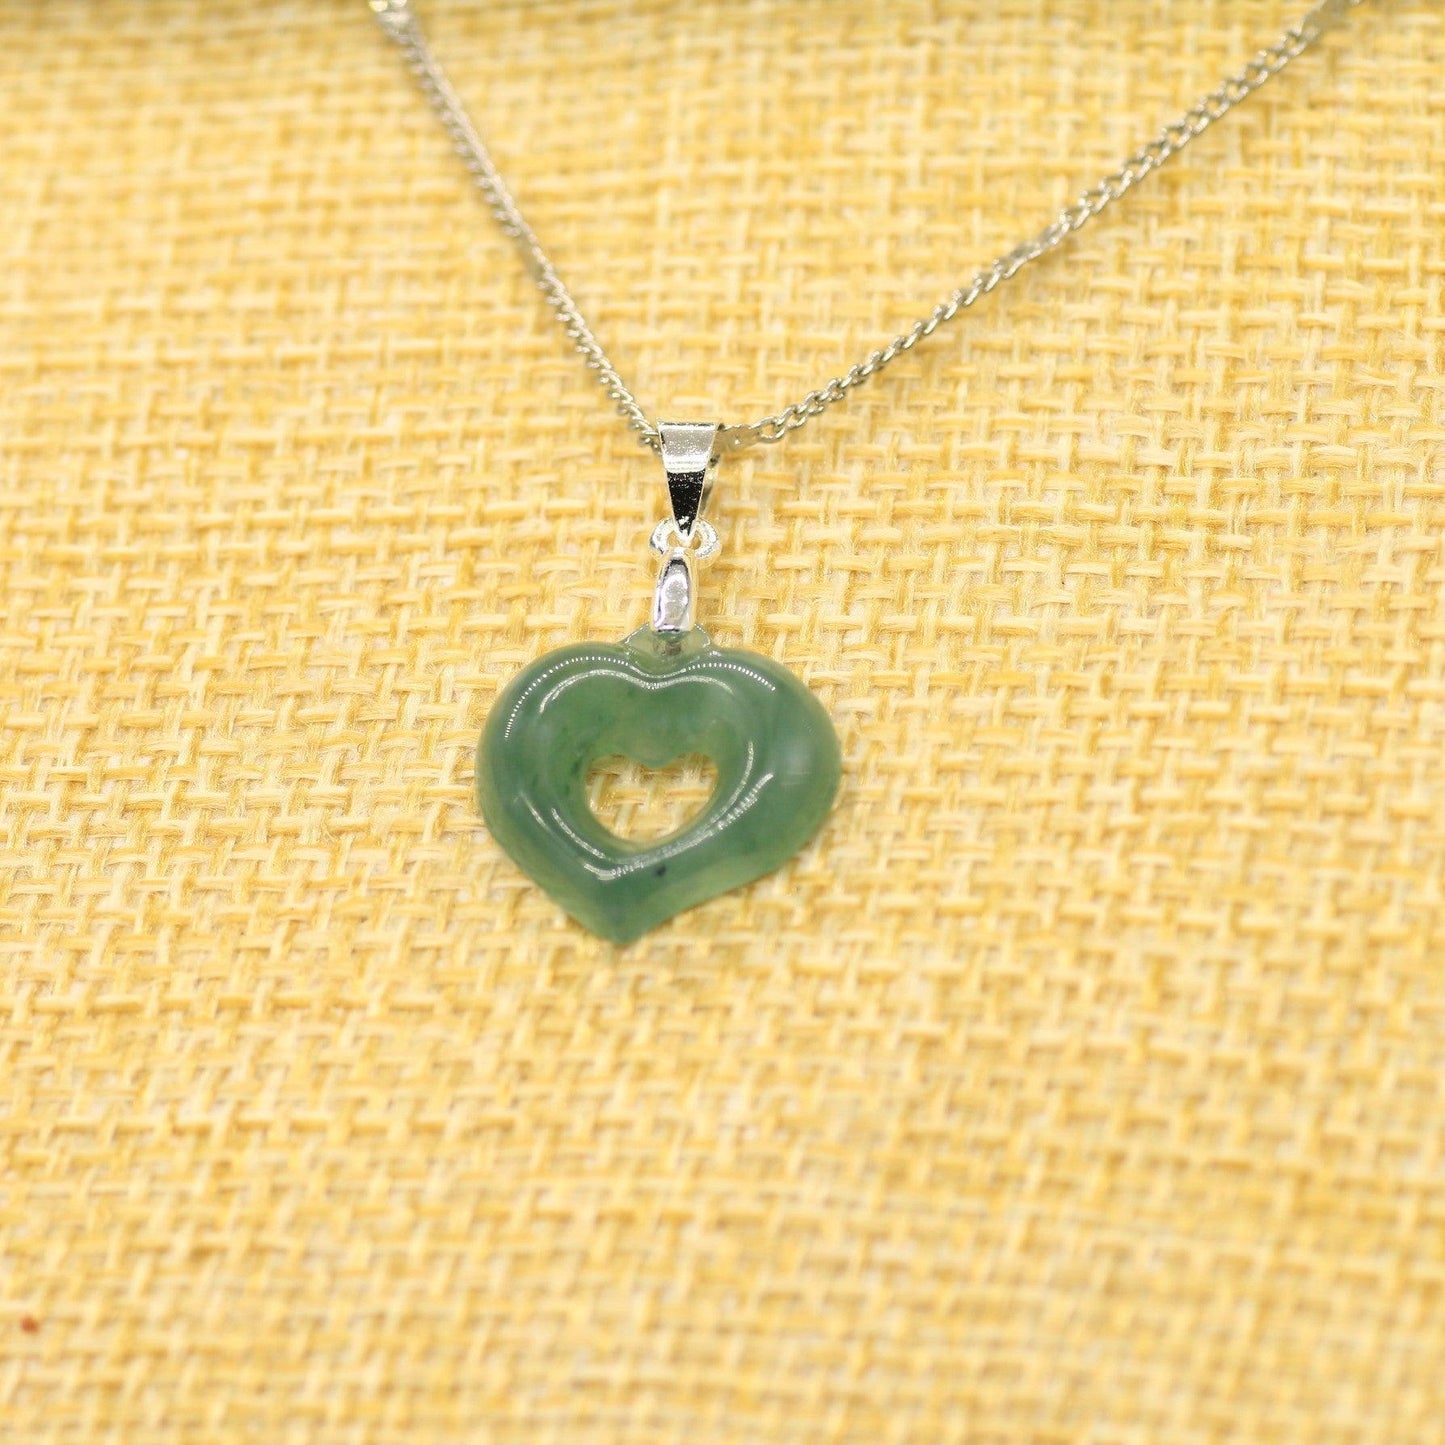 Type A Jadeite Jade Mini Heart Pendants - Jade-collector.com